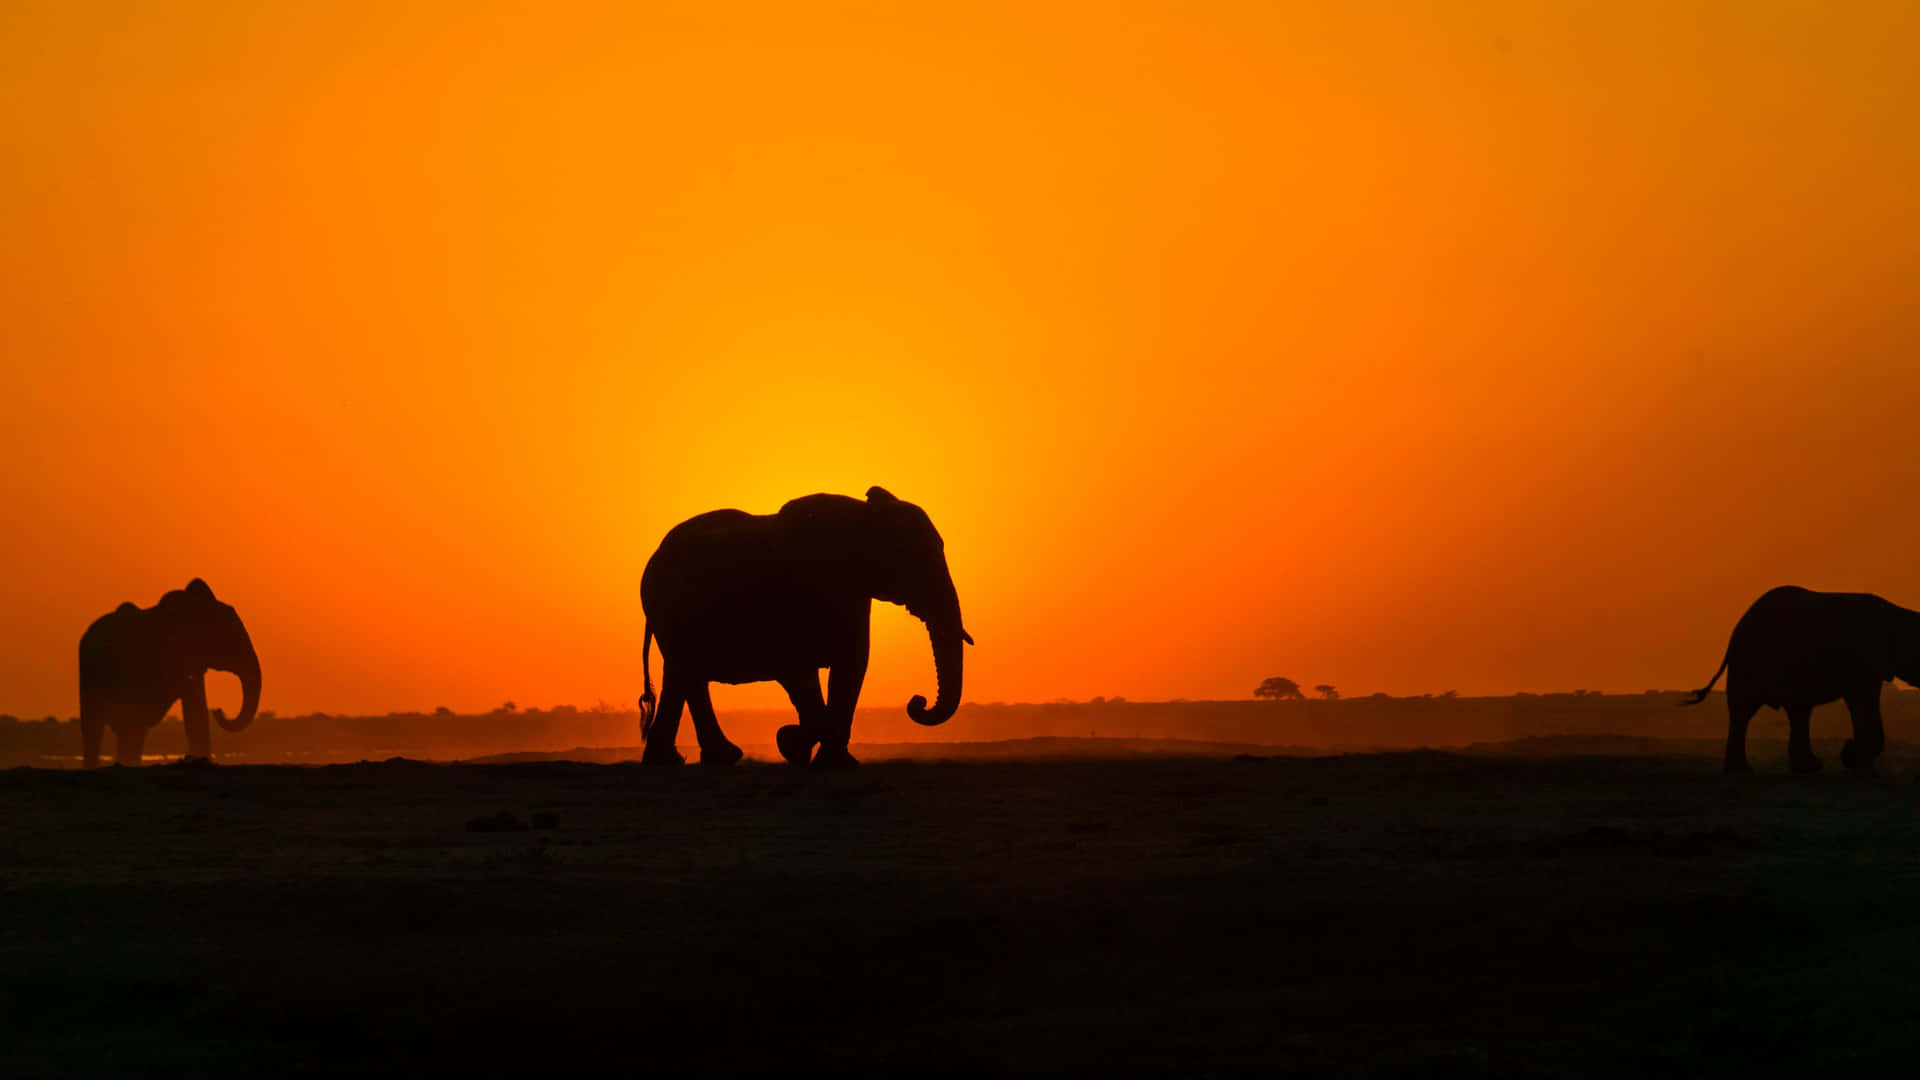 Elephants Silhouette In Africa Hd Wallpaper